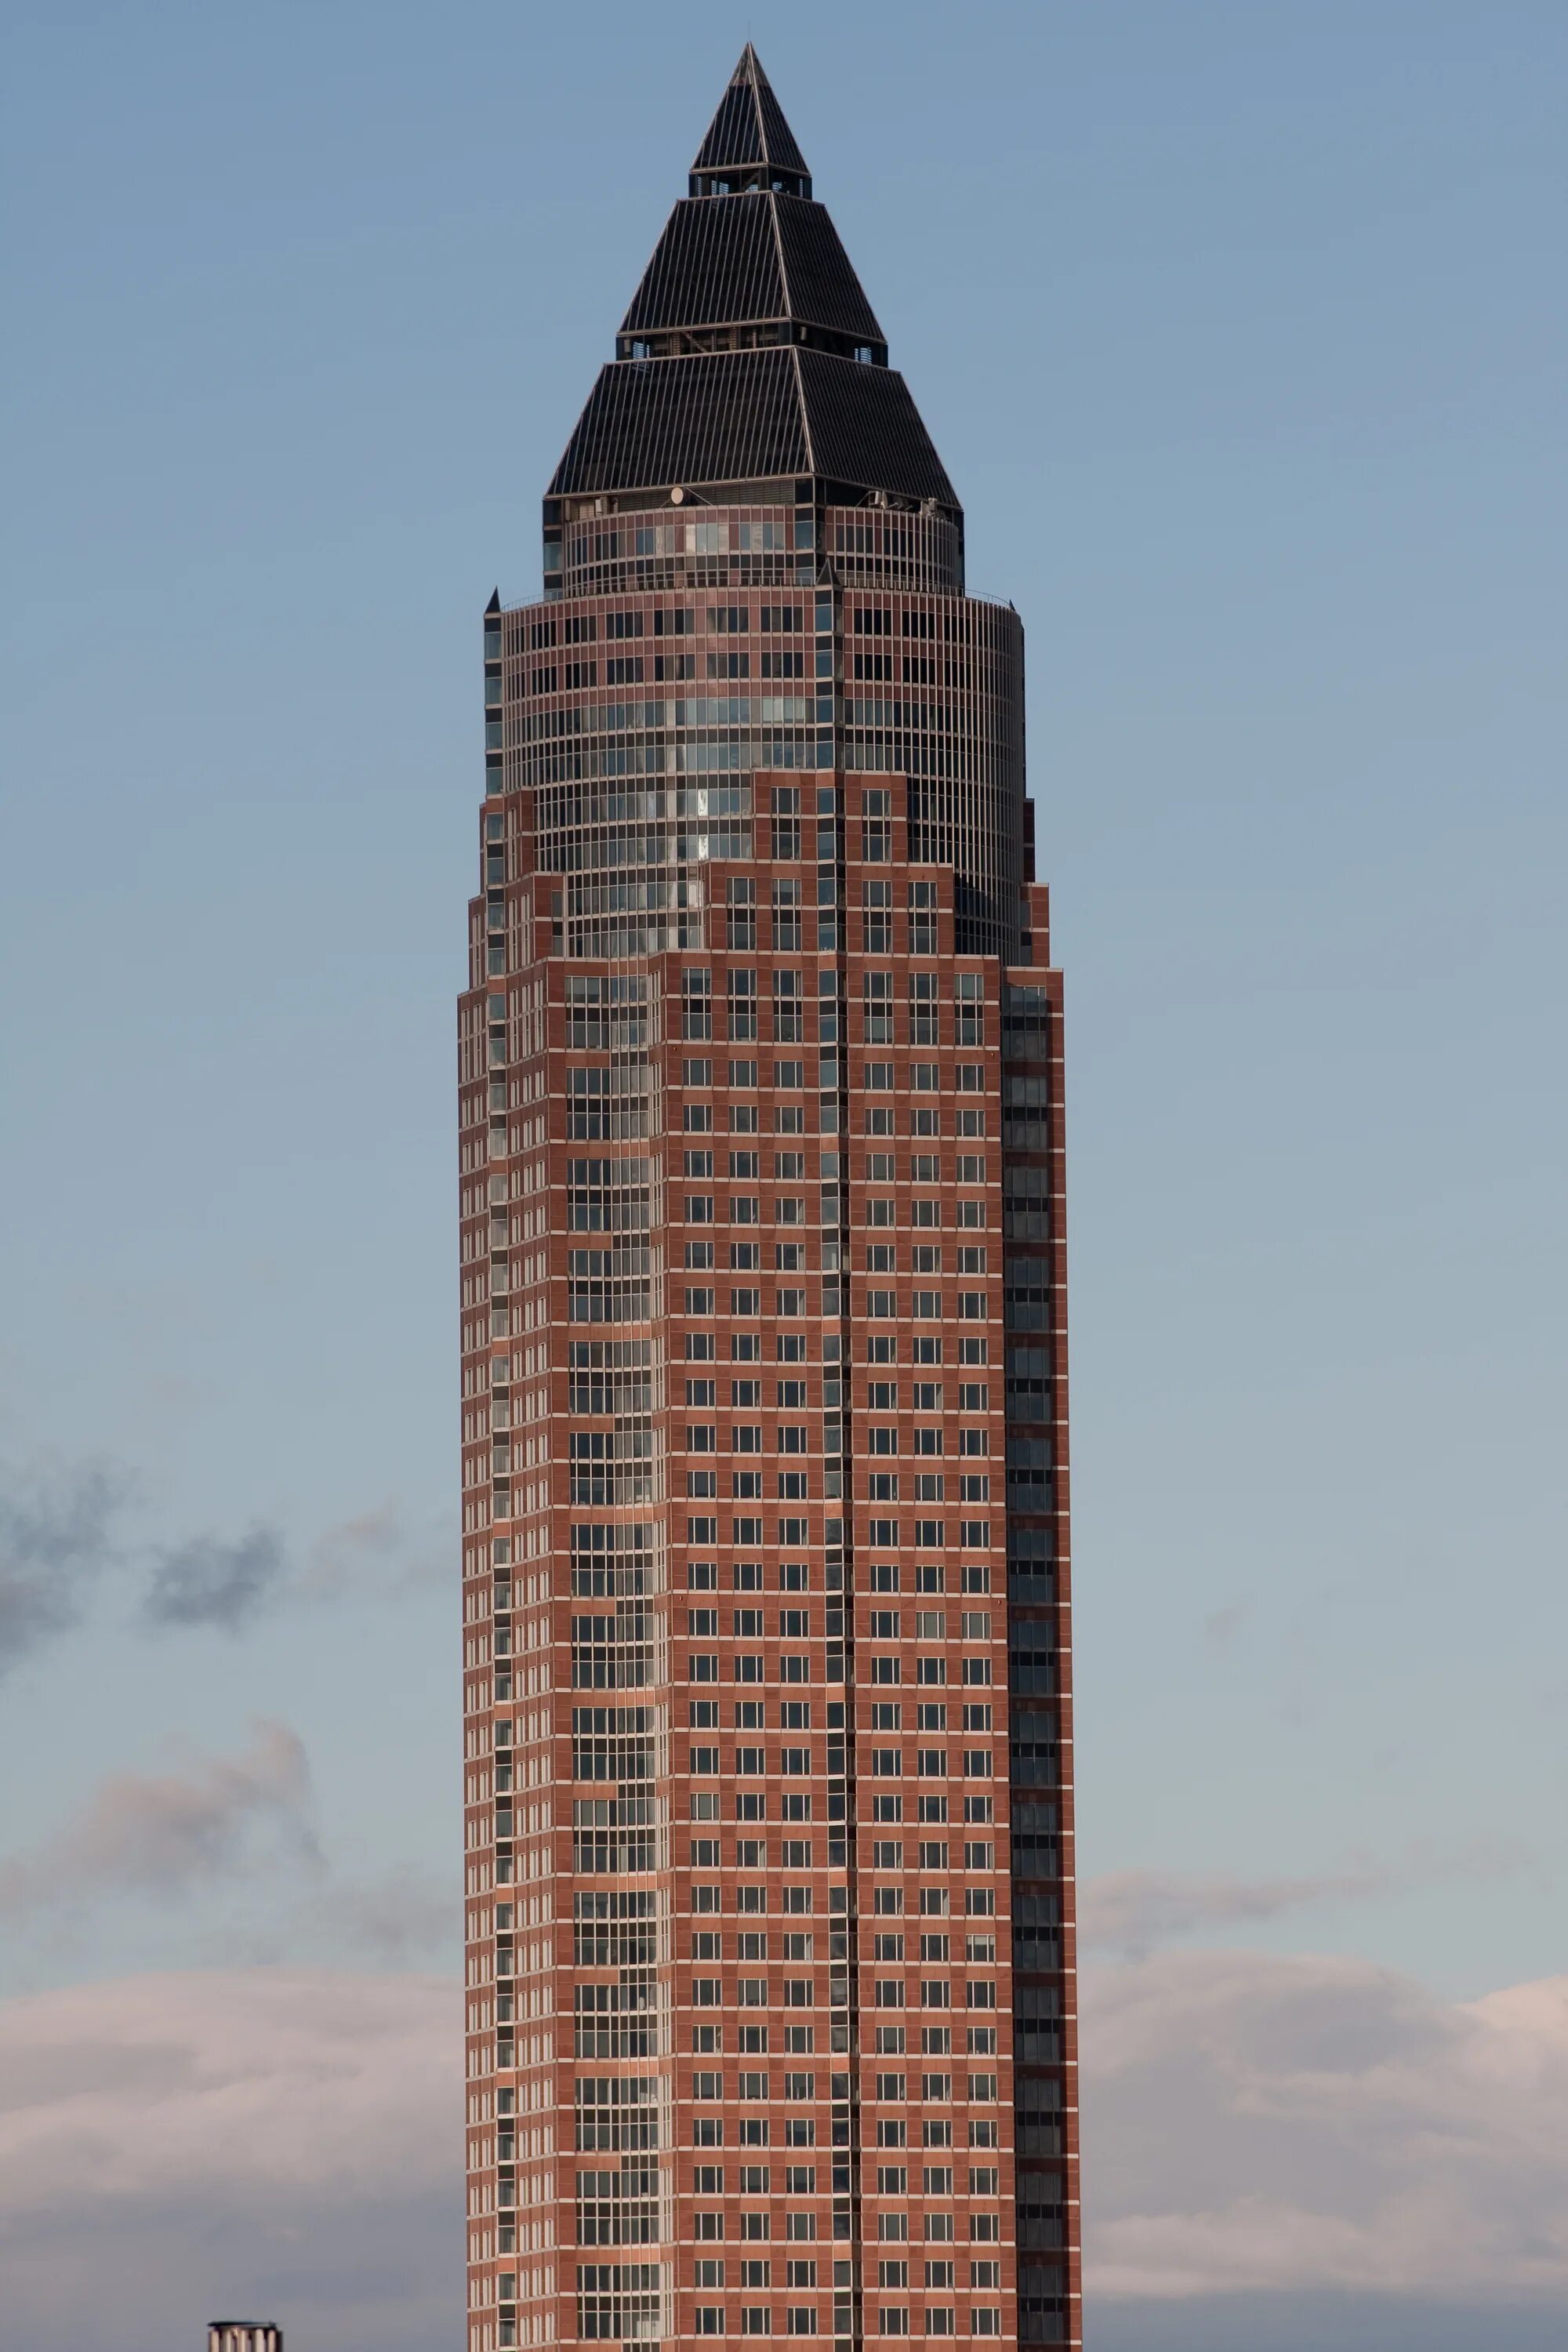 Башня выставочная. Мессетурм Франкфурт-на-Майне. Messeturm во Франкфурте. Ярмарочная башня во Франкфурте-на-Майне. Небоскреб Мессетурм.